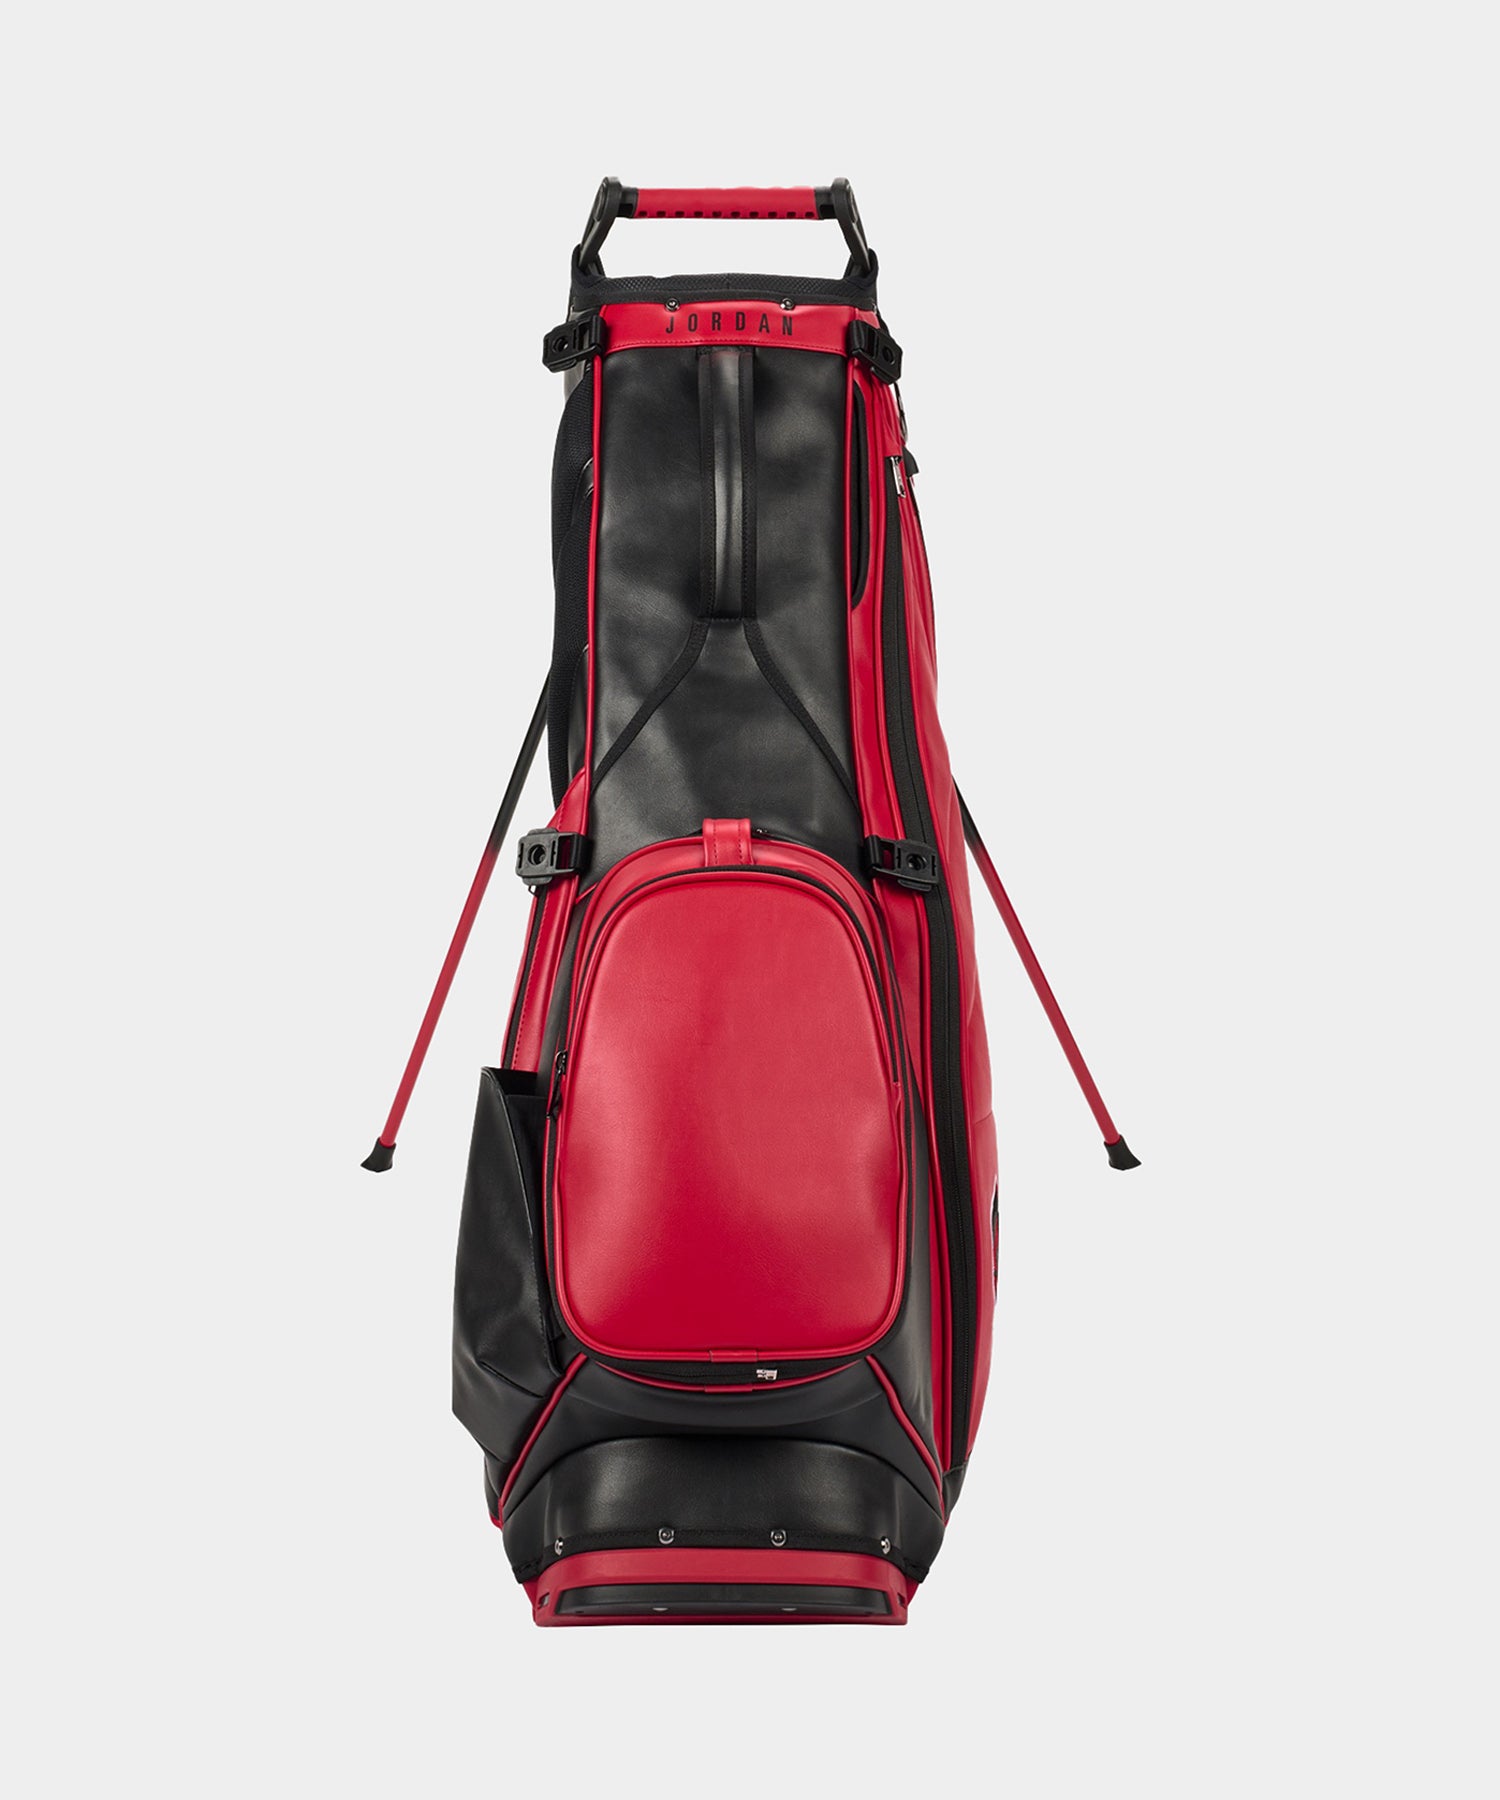 NIKE JORDAN Fade Away Premium Golf Bag バーシティレッド – HYPEGOLF